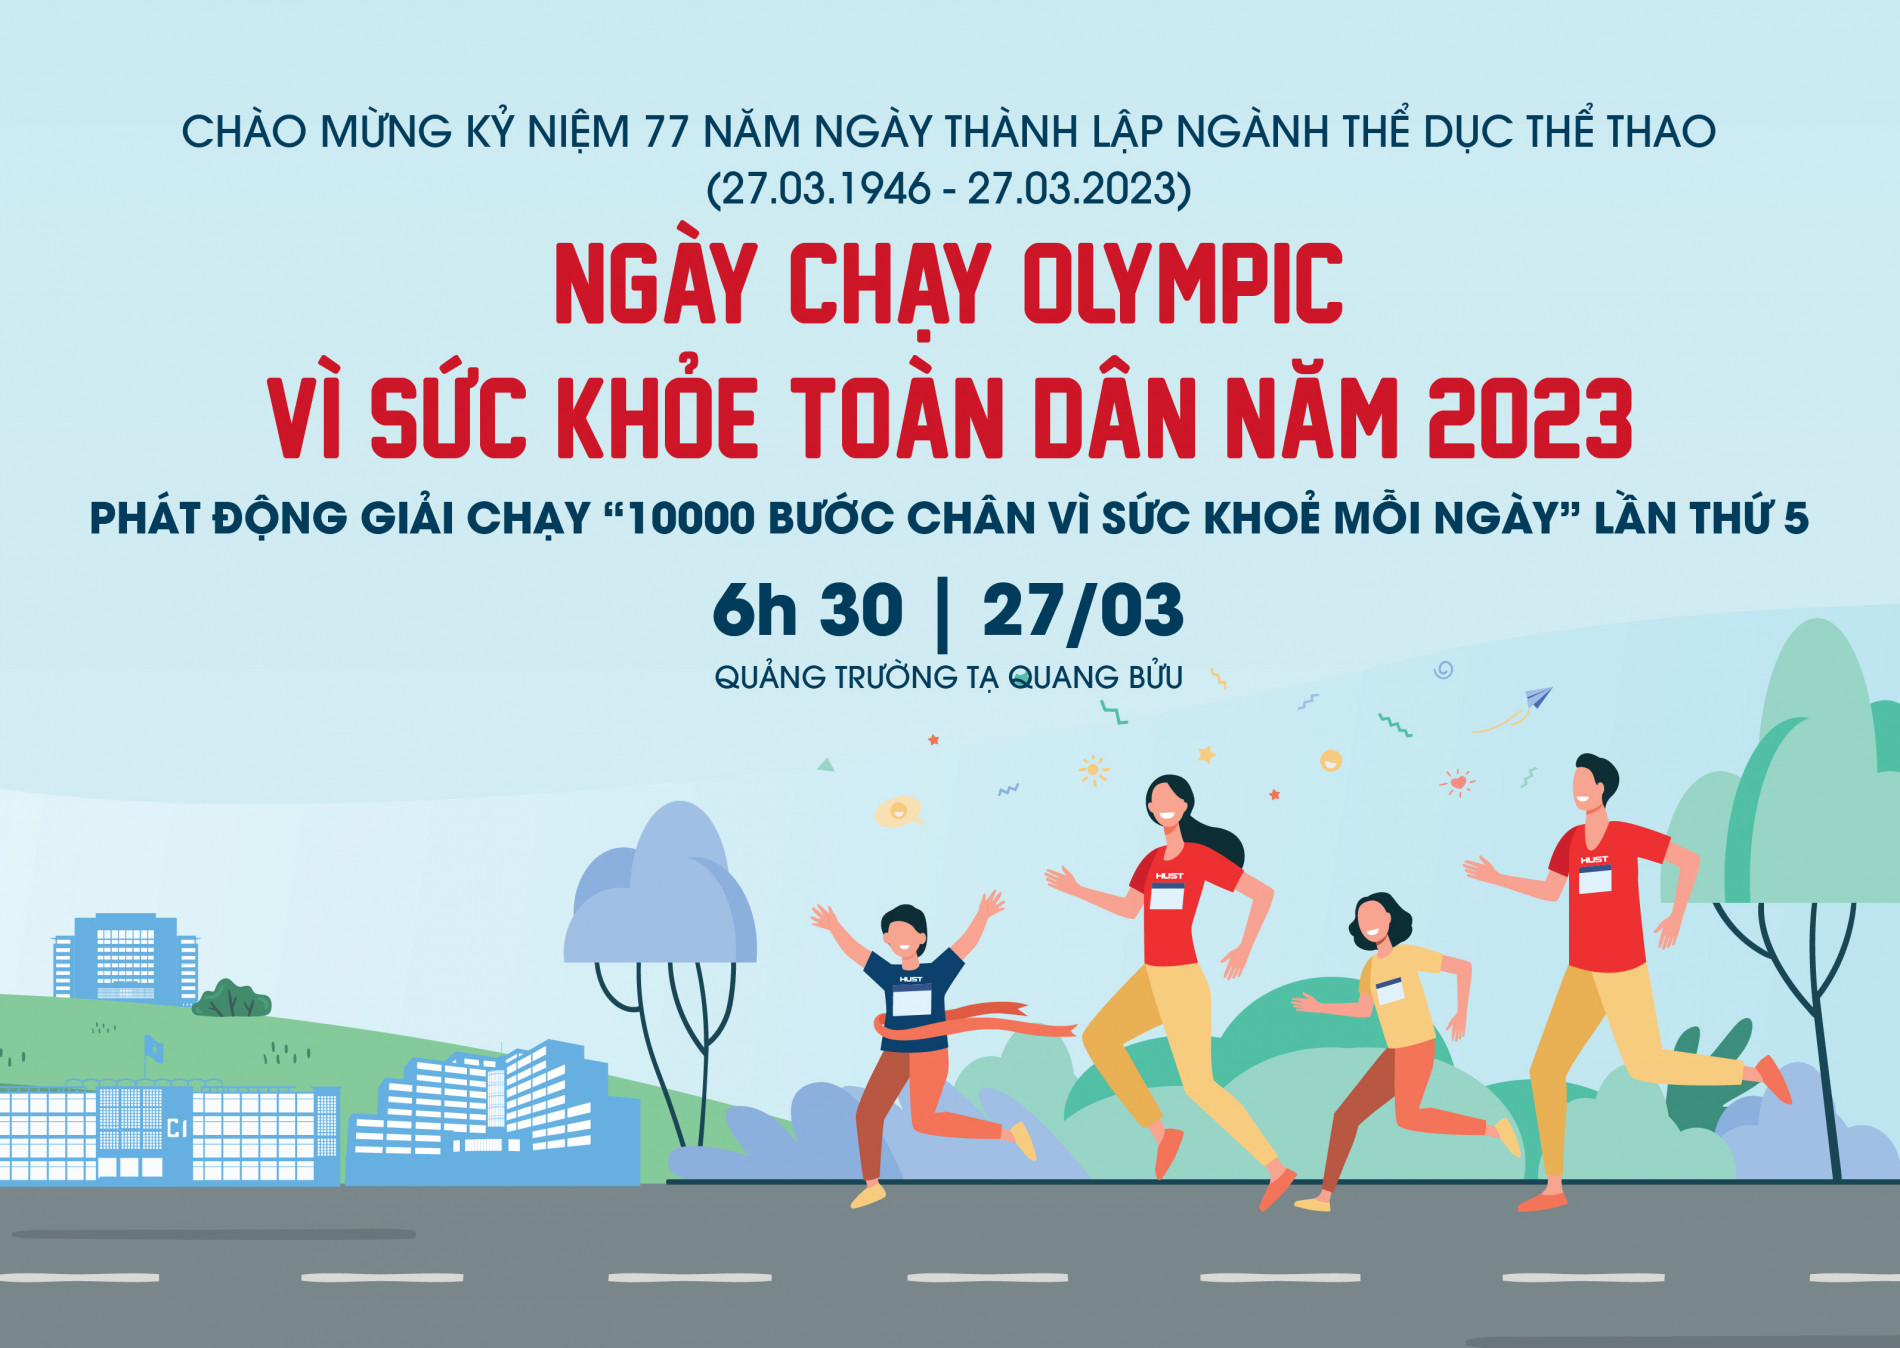 NGÀY CHẠY OLYMPIC VÌ SỨC KHOẺ TOÀN DÂN 2023